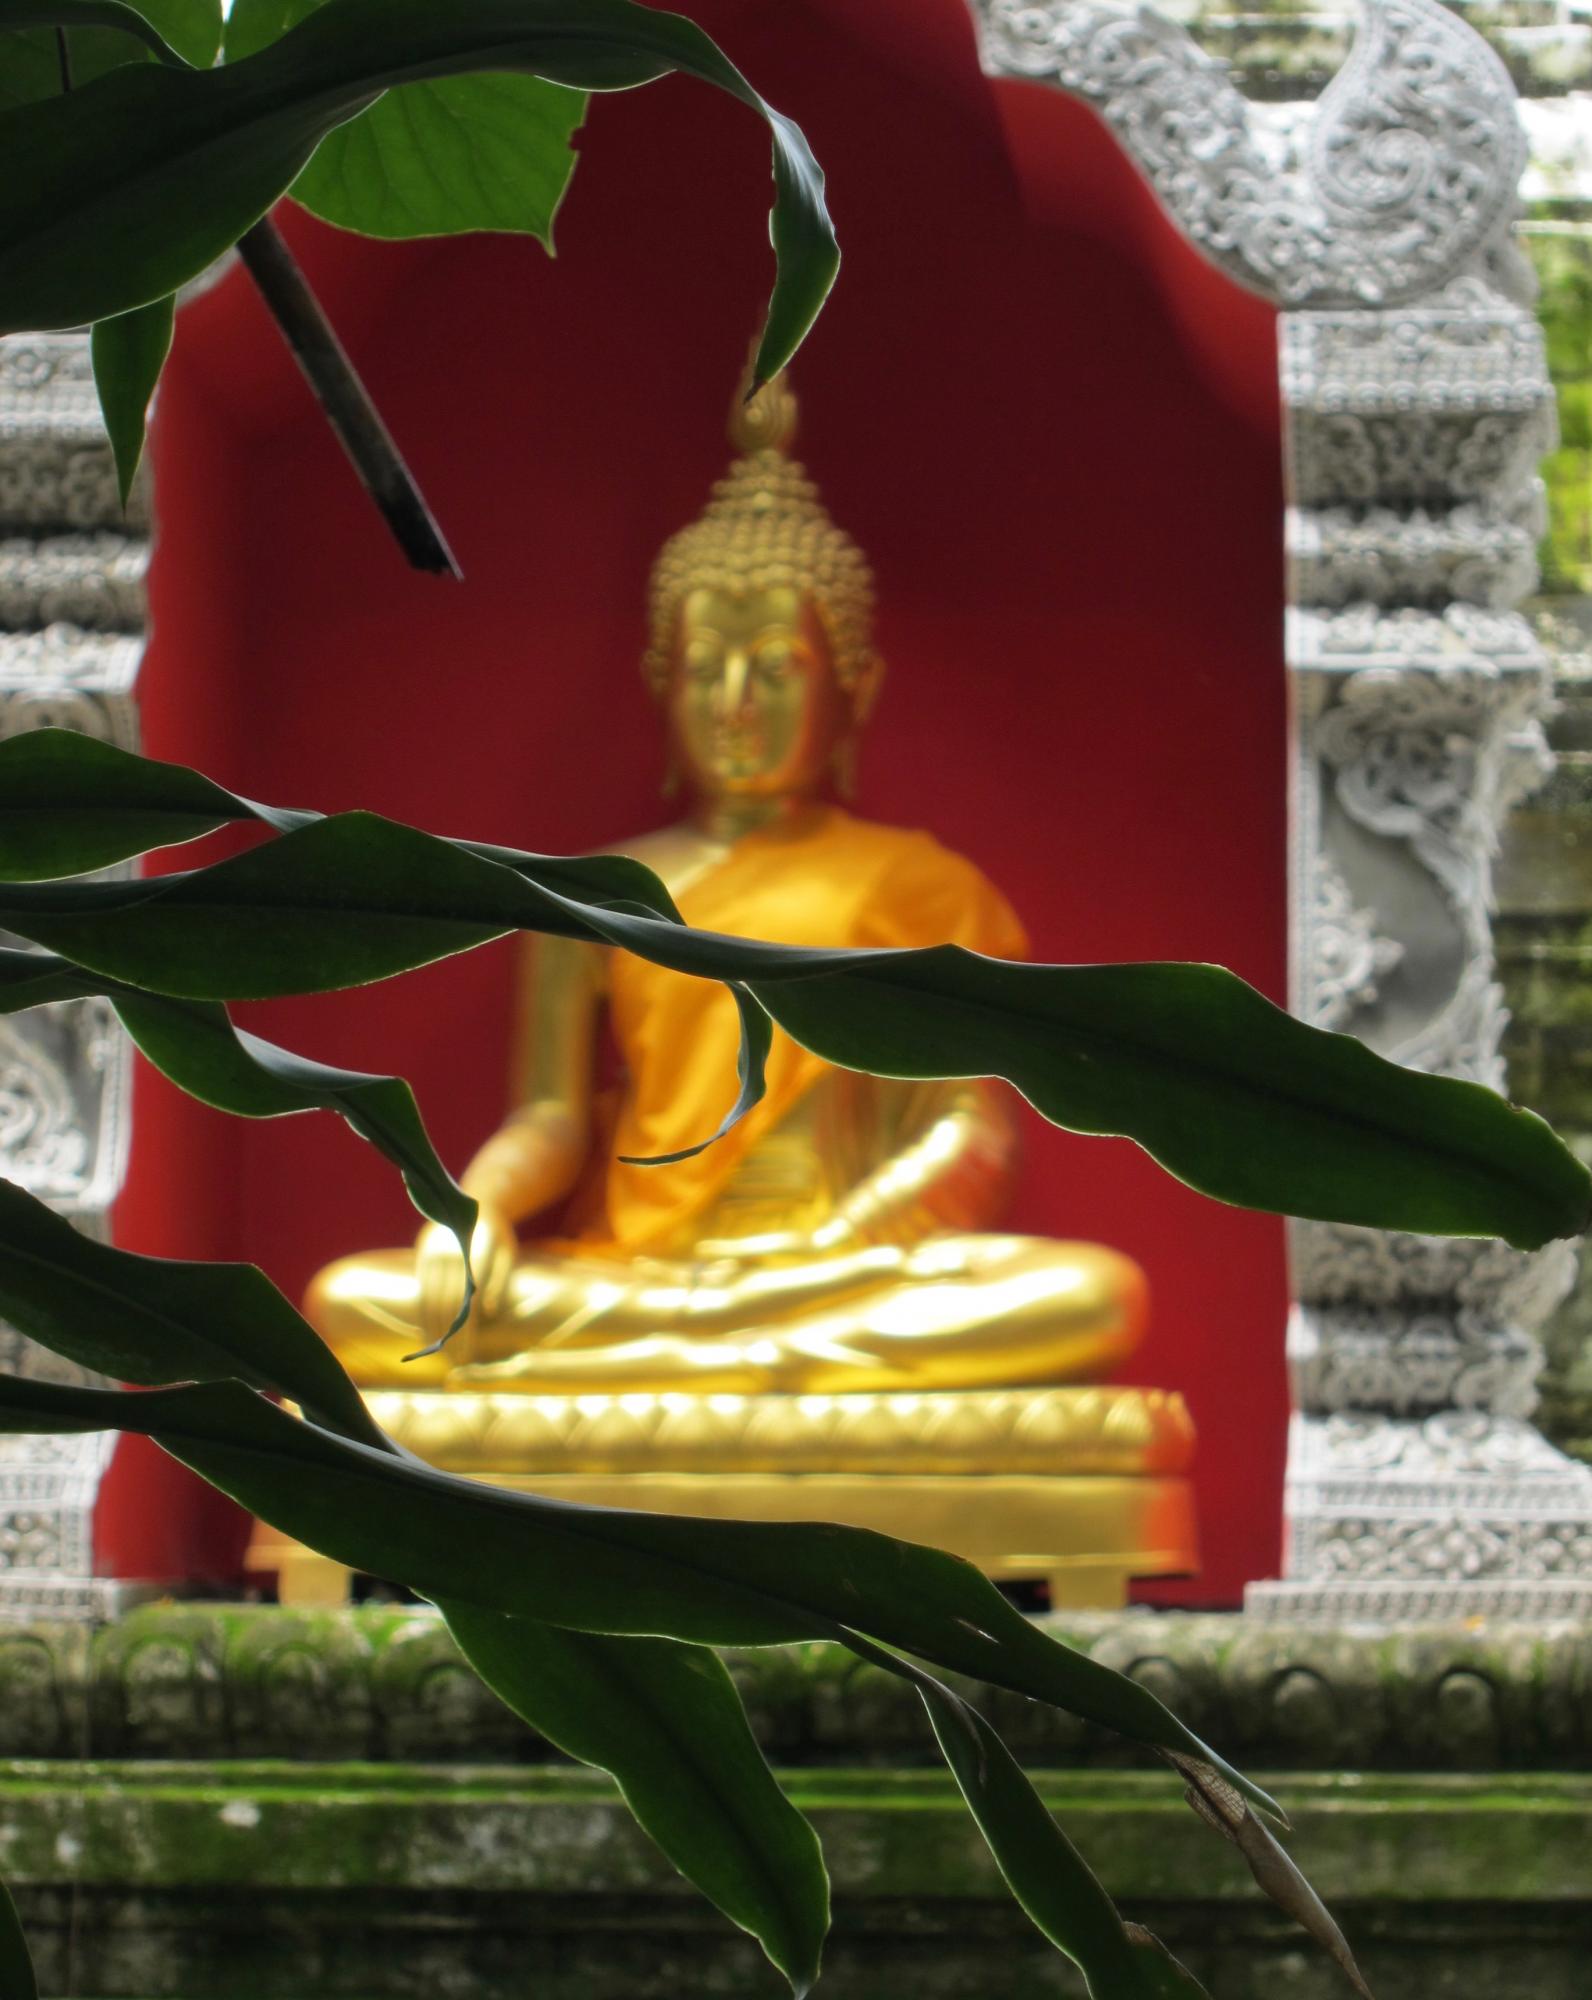 Buddha in temple